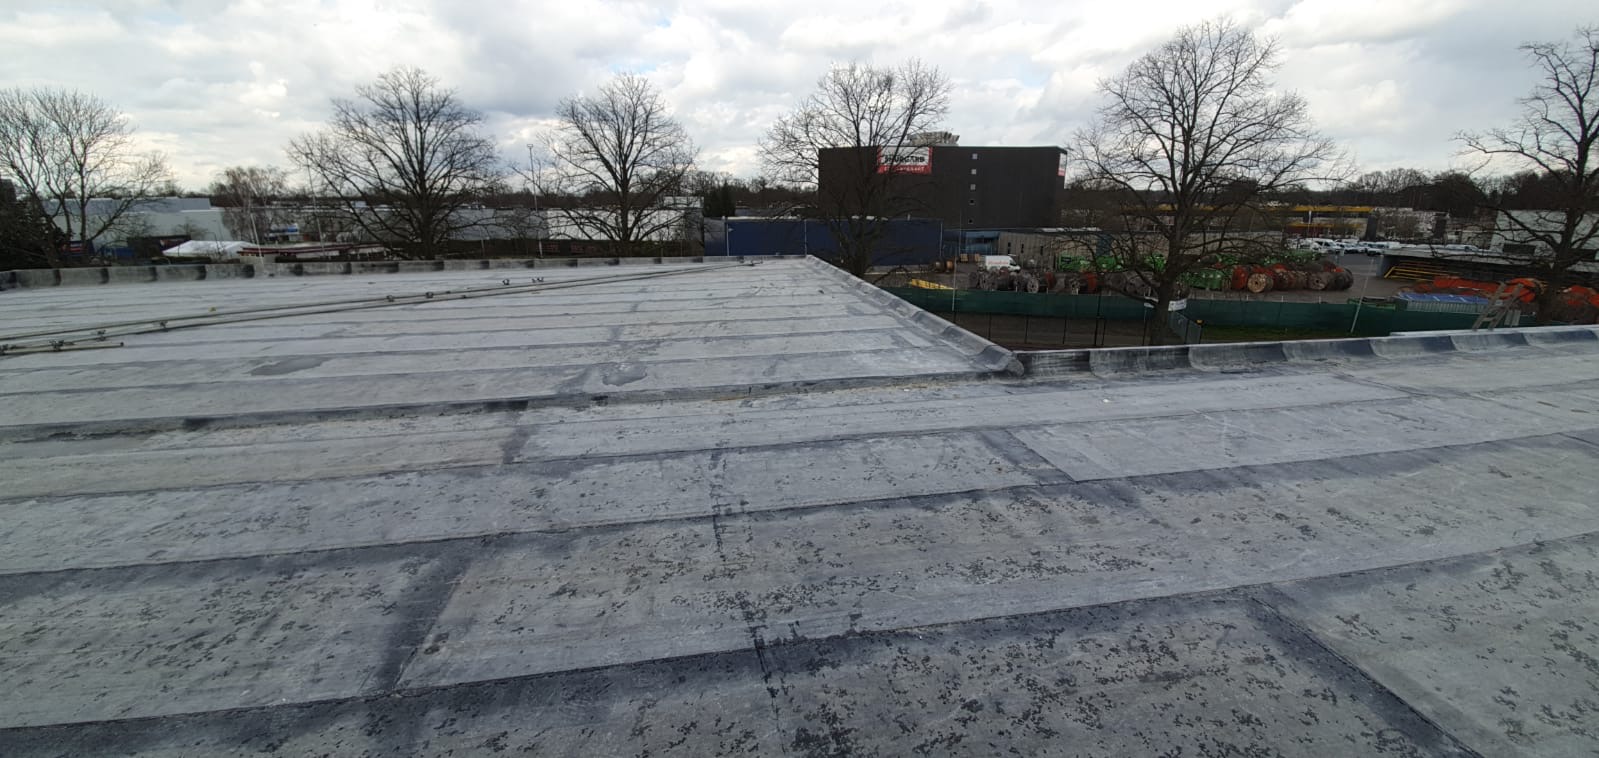 Veldscholten Dakbekking gereed met dak nieuwe bedrijfshal VST BV HENGELO 